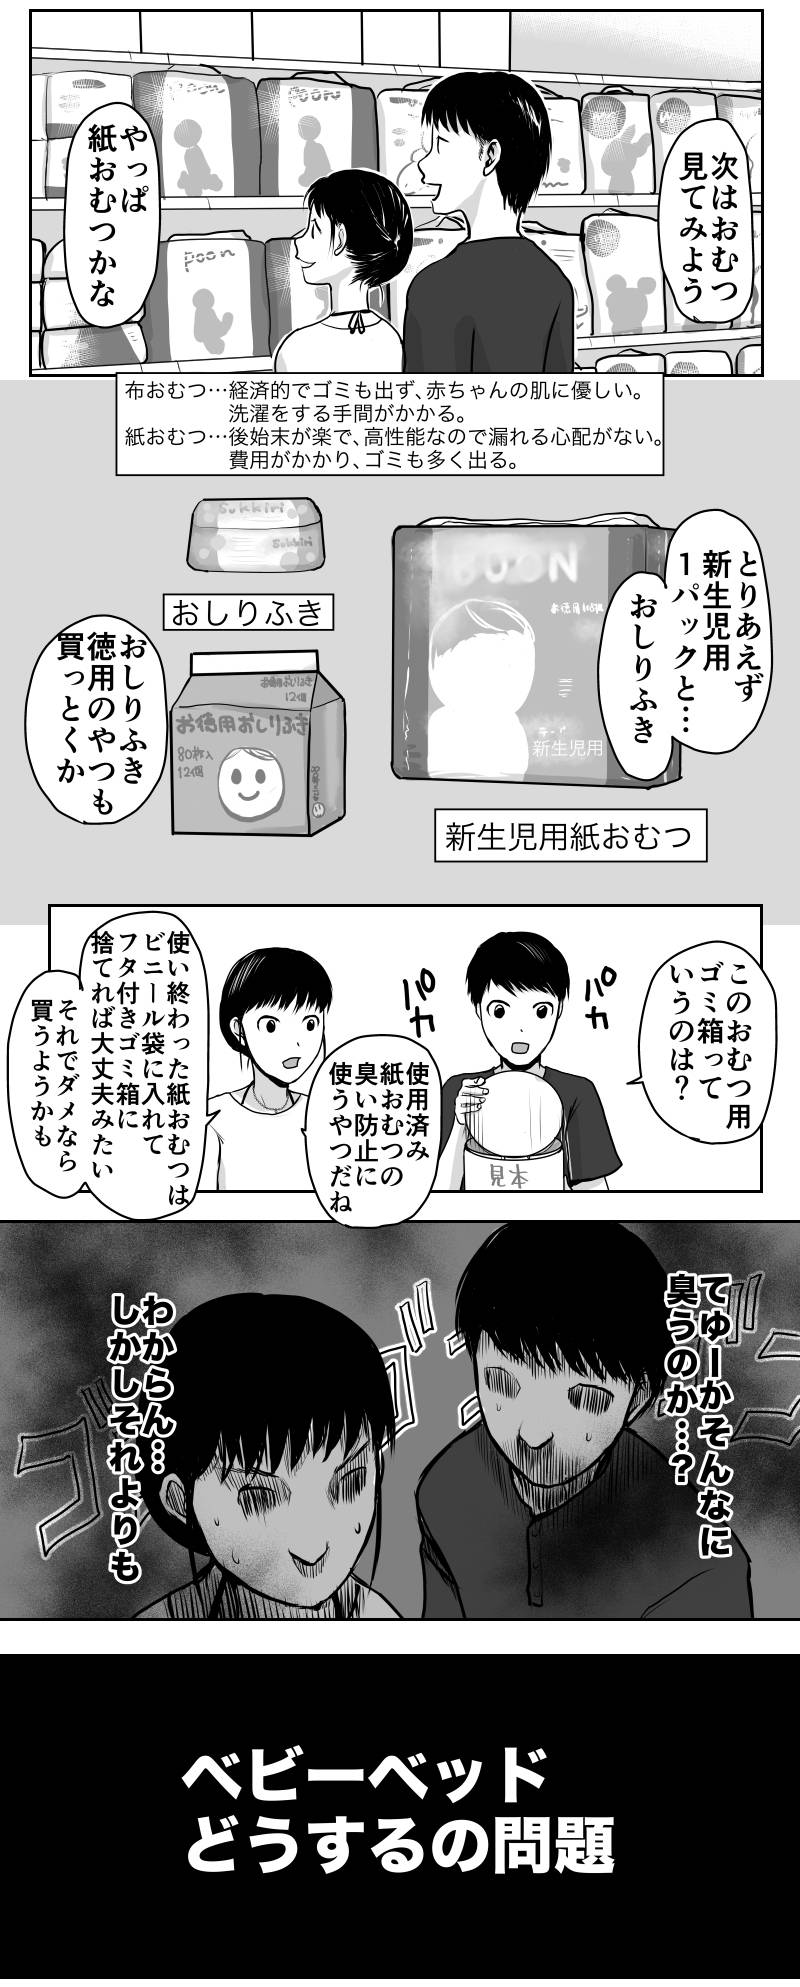 久永家〜妊娠出産がわかるエッセイ漫画〜 第21話